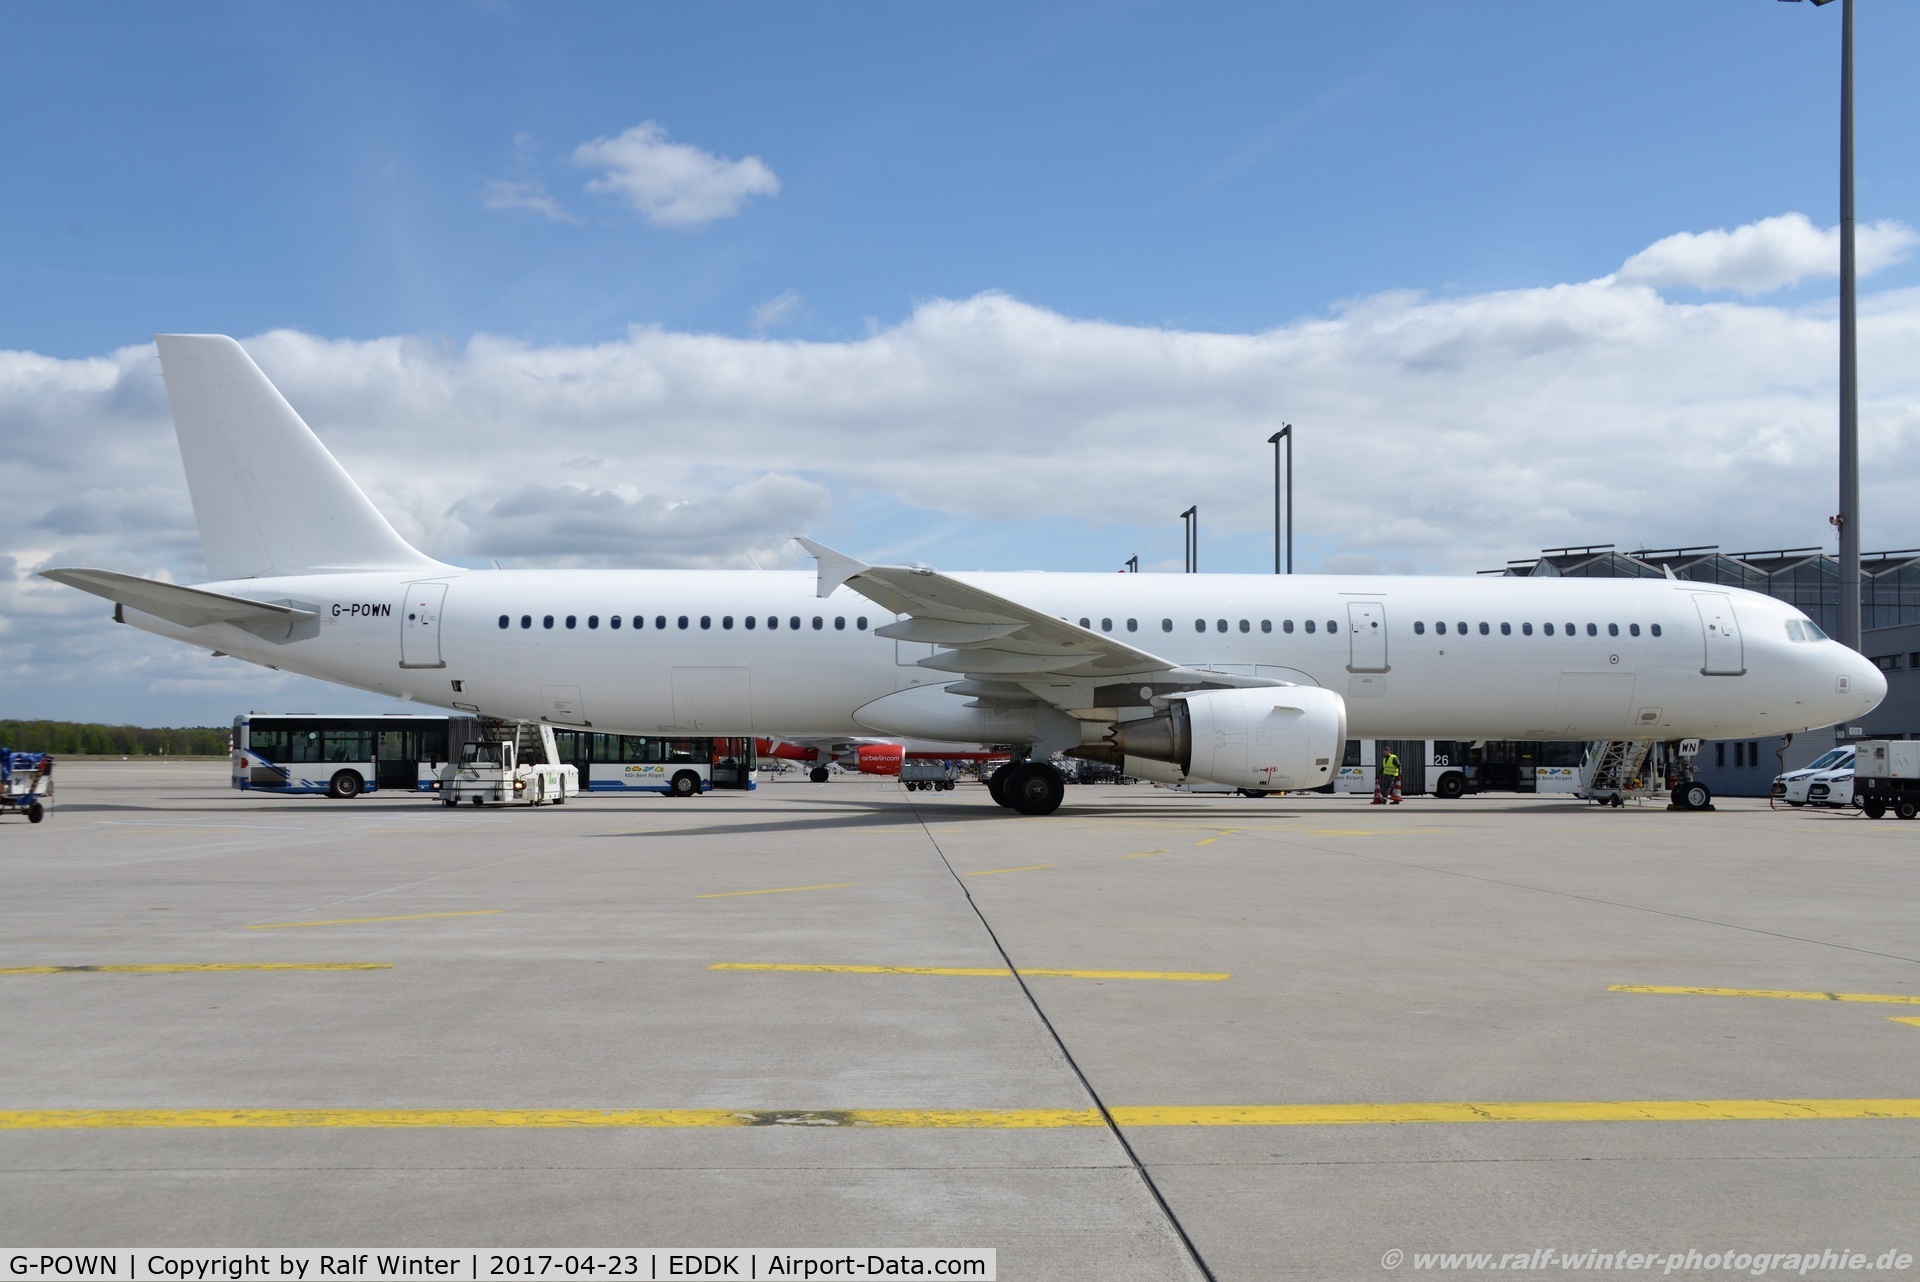 G-POWN, 2009 Airbus A321-211 C/N 3830, Airbus A321-211 - ZT AWC Titan Airways all white - 3830 - G-POWN - 23.04.2017 - CGN